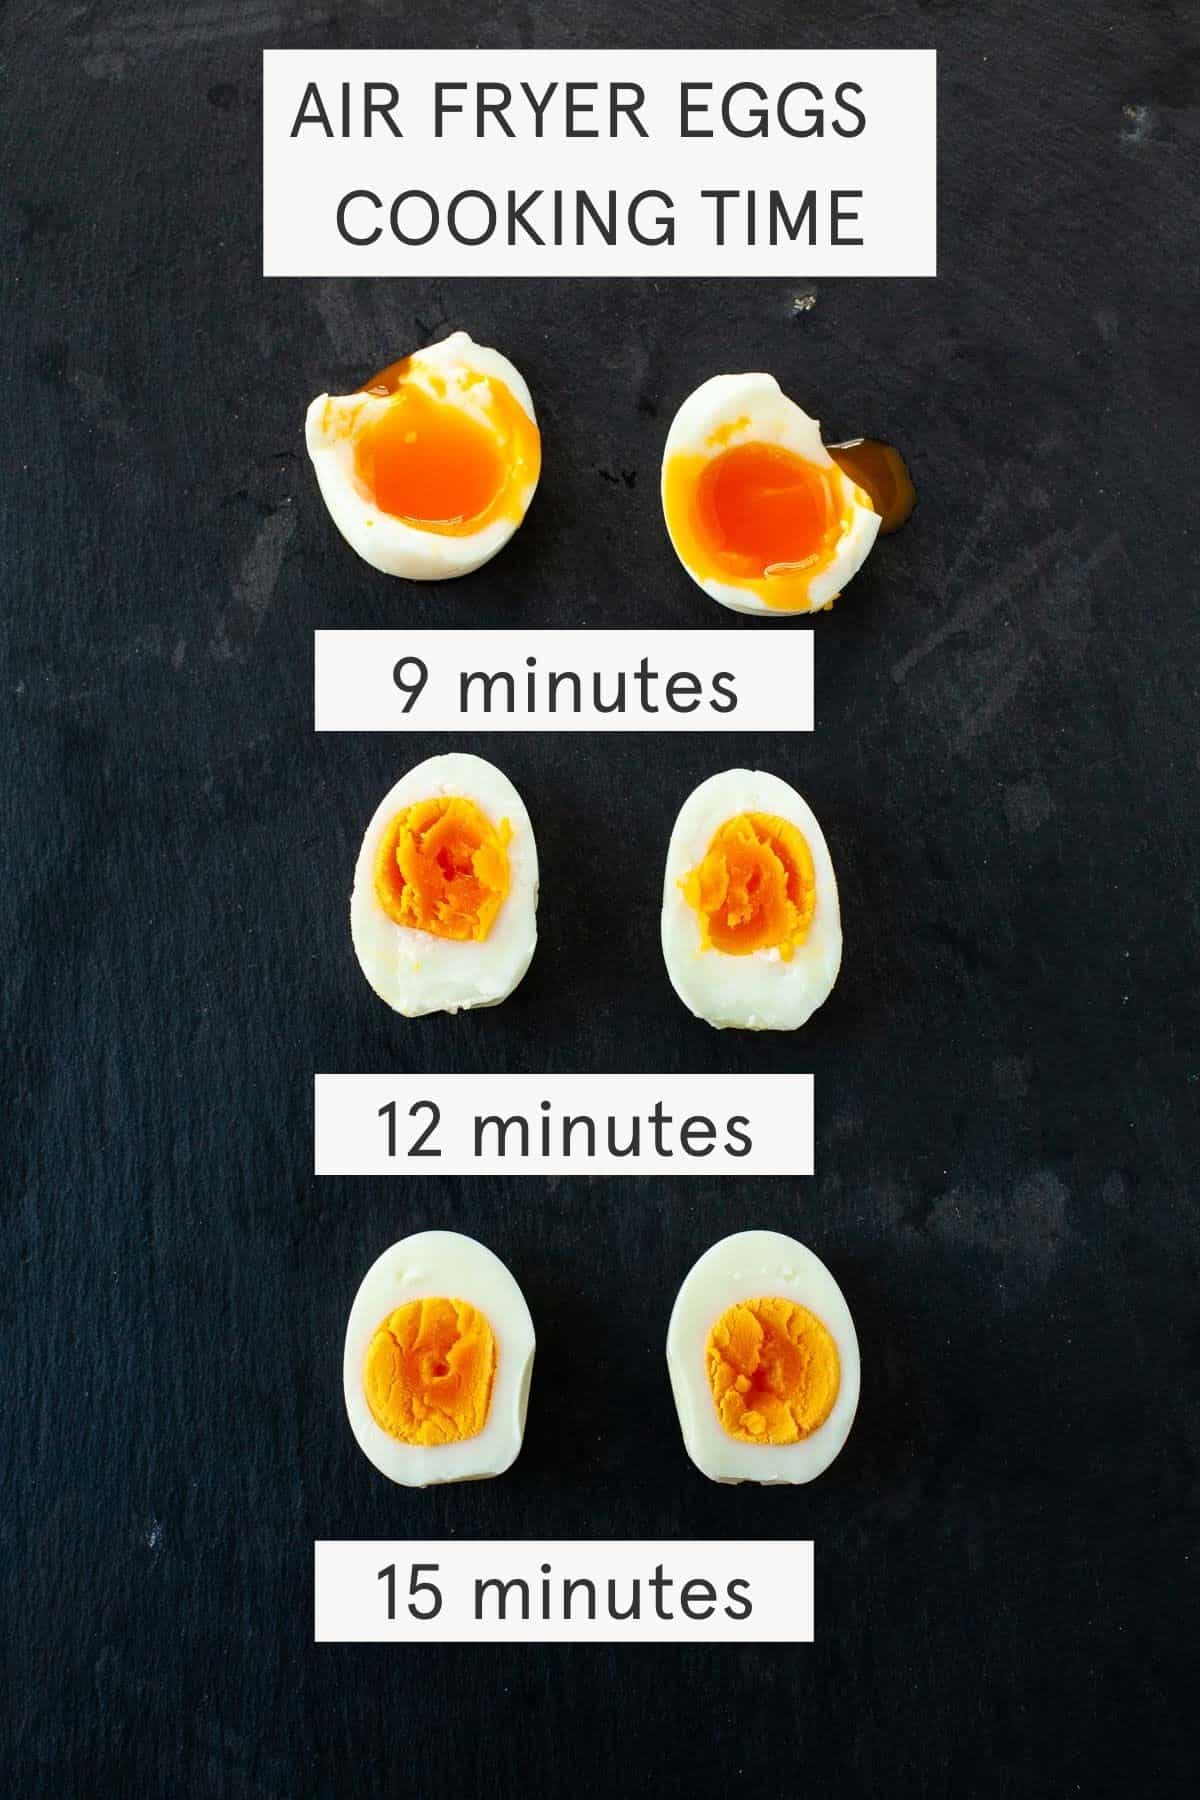 زمان پخت، 9، 12، 15 دقیقه، تخم مرغ ها را روی زمینه سیاه به دو نیم کنید.